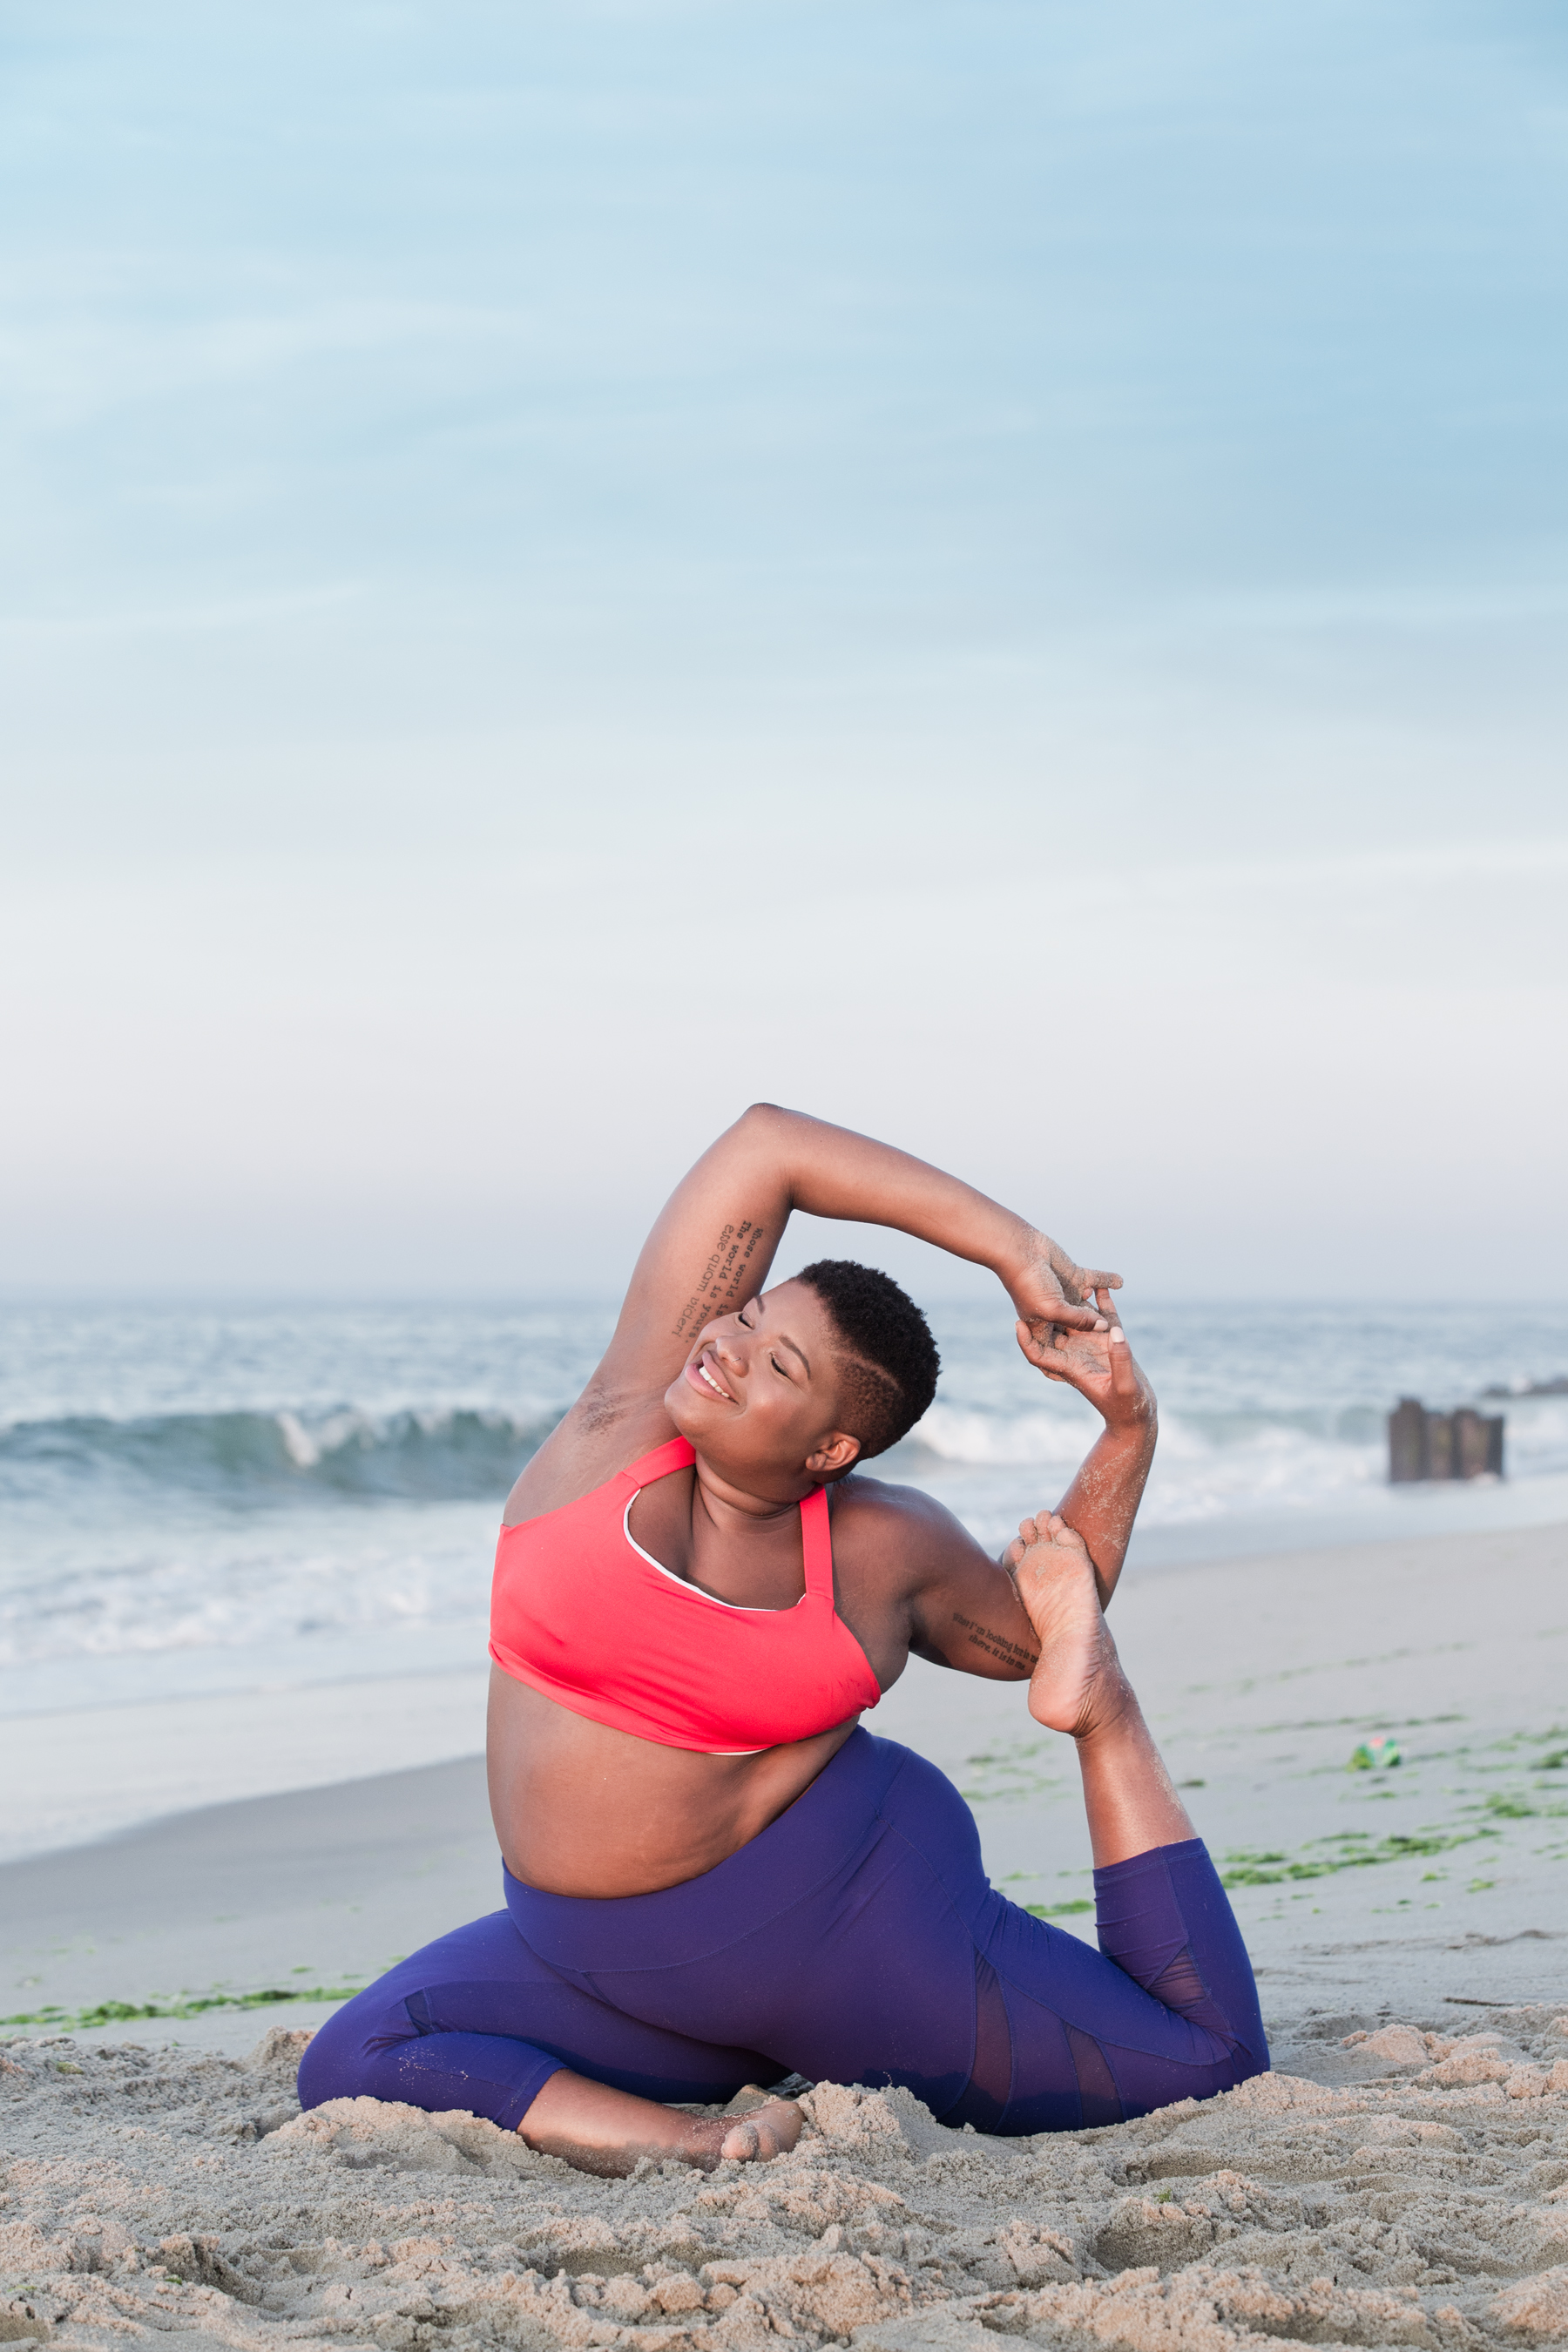 Wellness advocate, author Jessamyn Stanley to speak on yoga